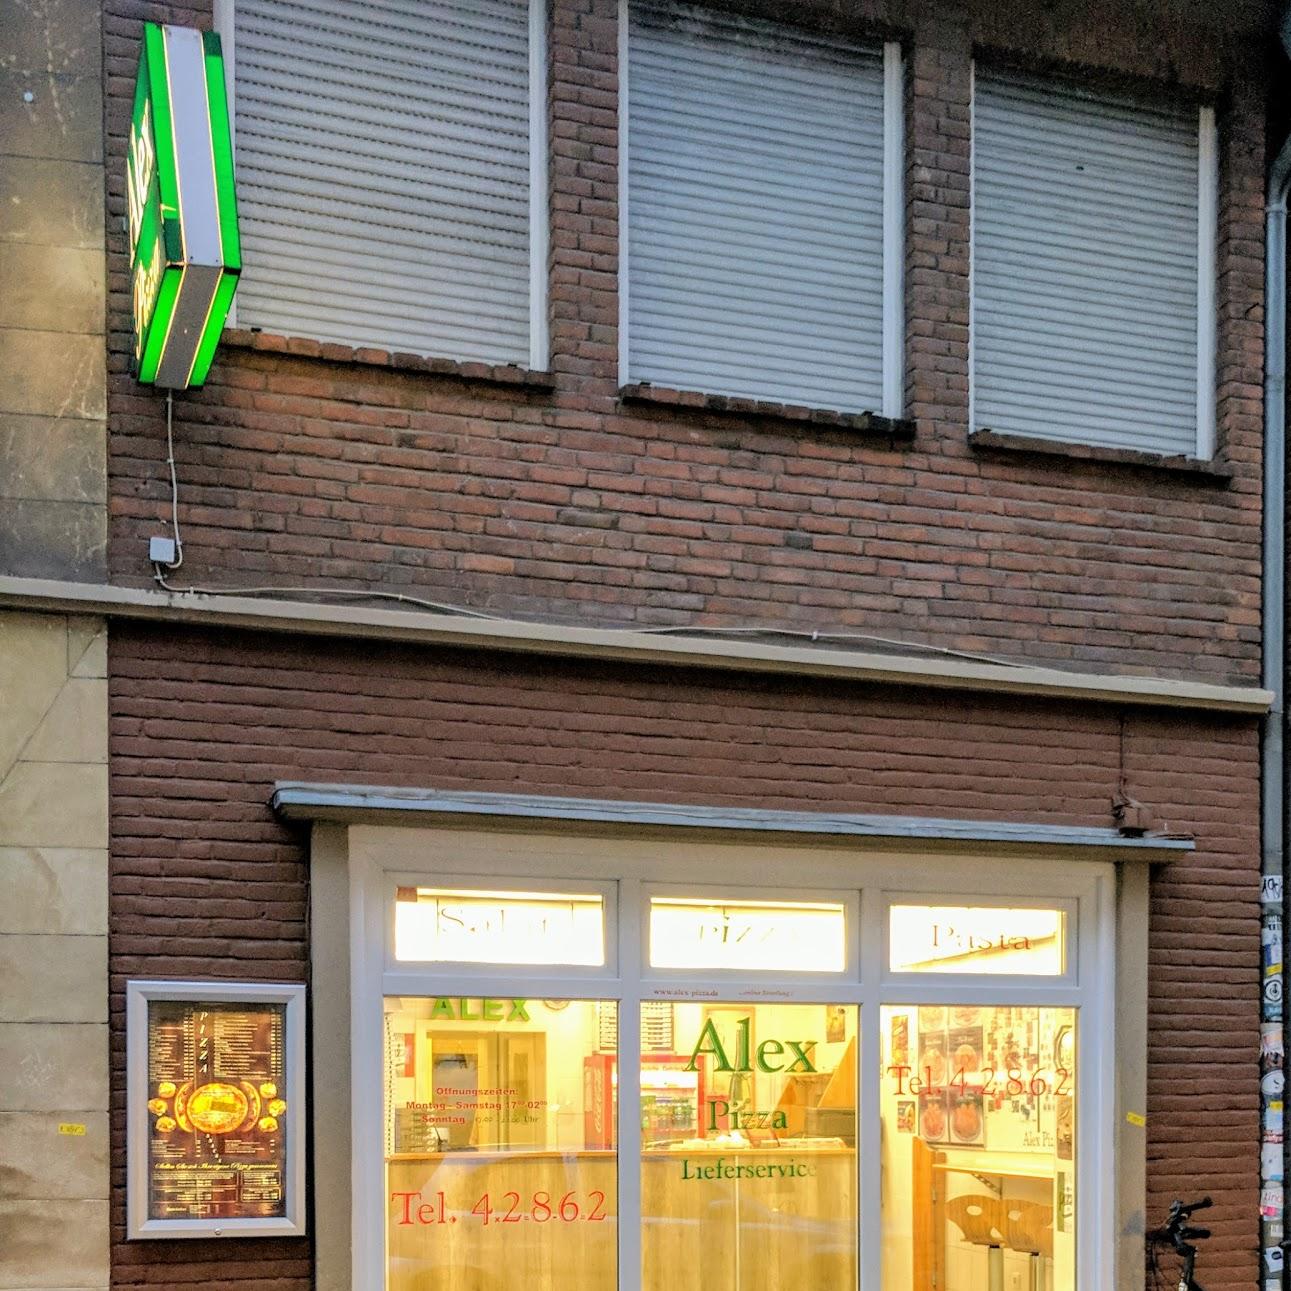 Restaurant "Alex Pizza" in Münster